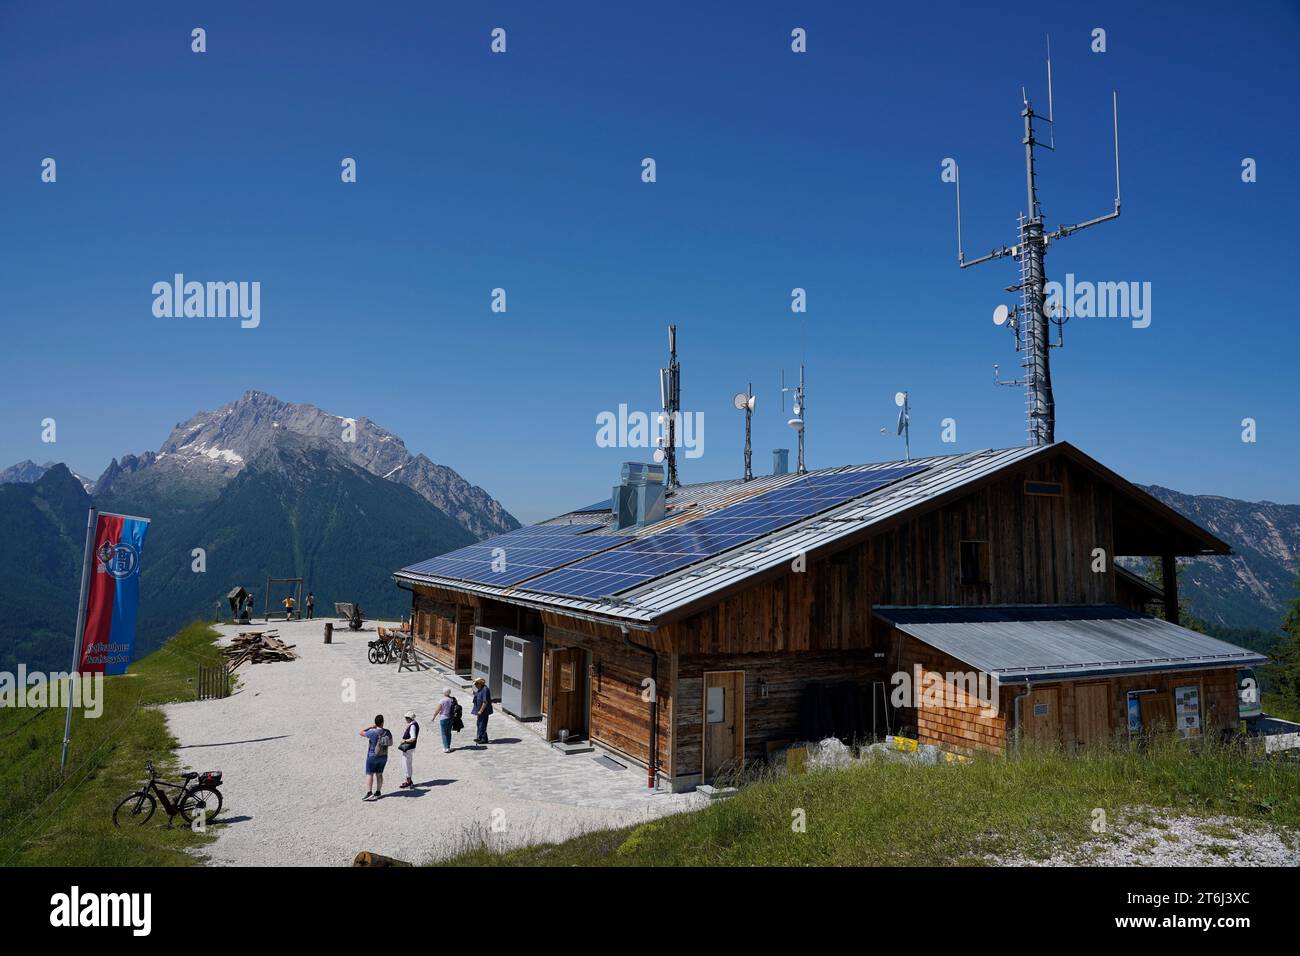 Deutschland, Bayern, Ramsau, Bergrestaurant Hirschkaser, Dach, Photovoltaik, Antennen, Handymast, Hochkalter im Hintergrund Stockfoto